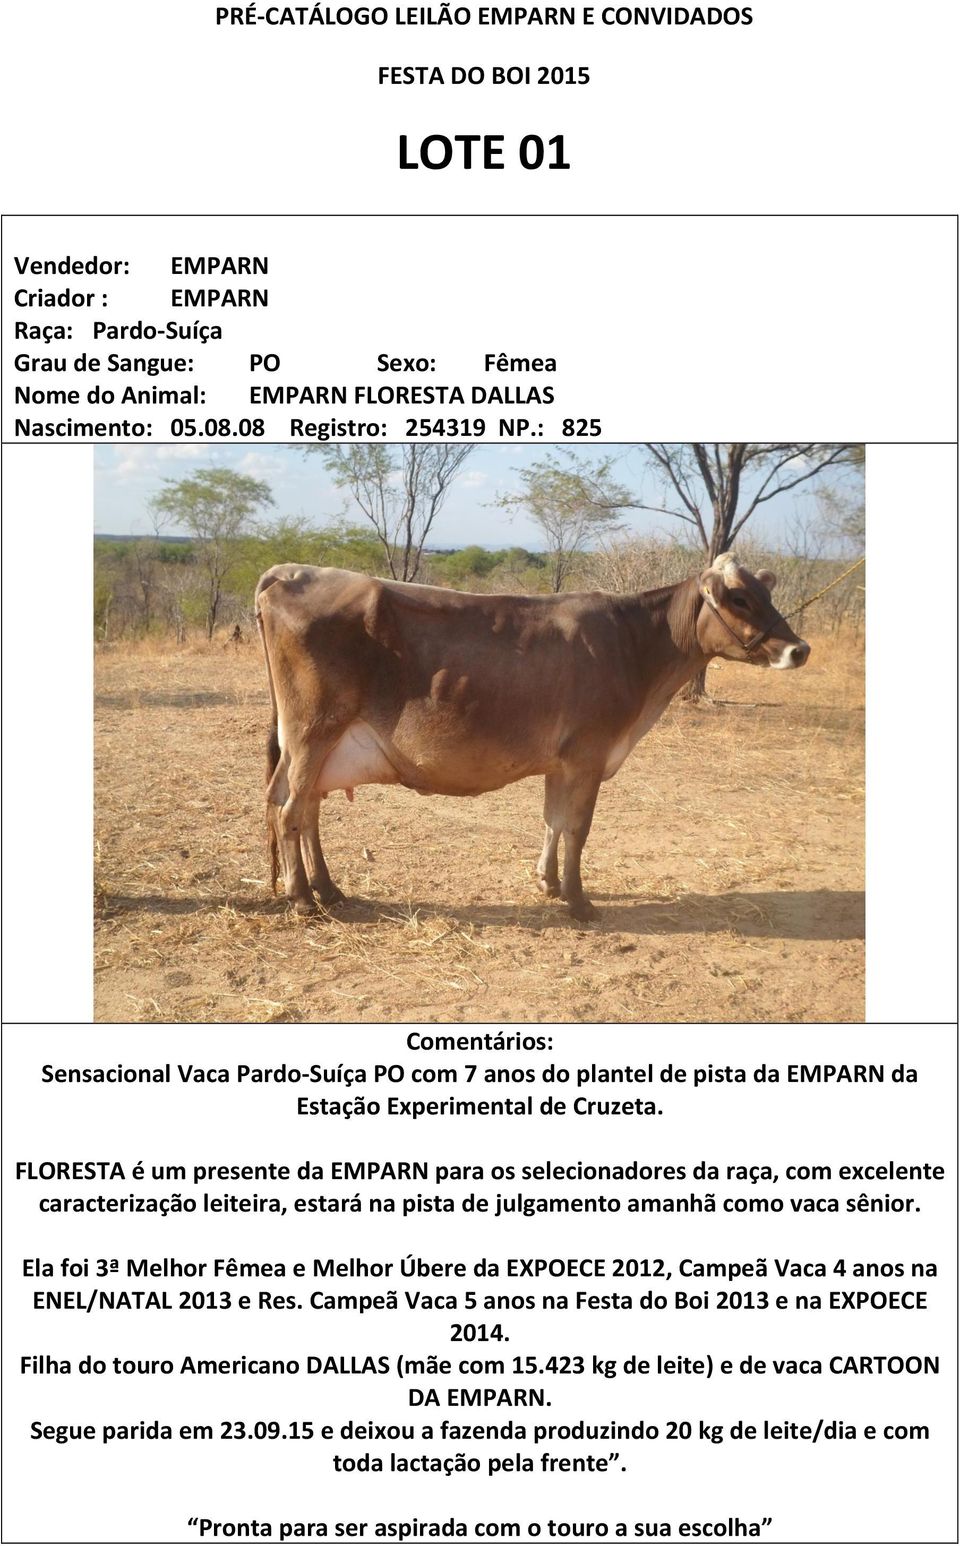 FLORESTA é um presente da EMPARN para os selecionadores da raça, com excelente caracterização leiteira, estará na pista de julgamento amanhã como vaca sênior.